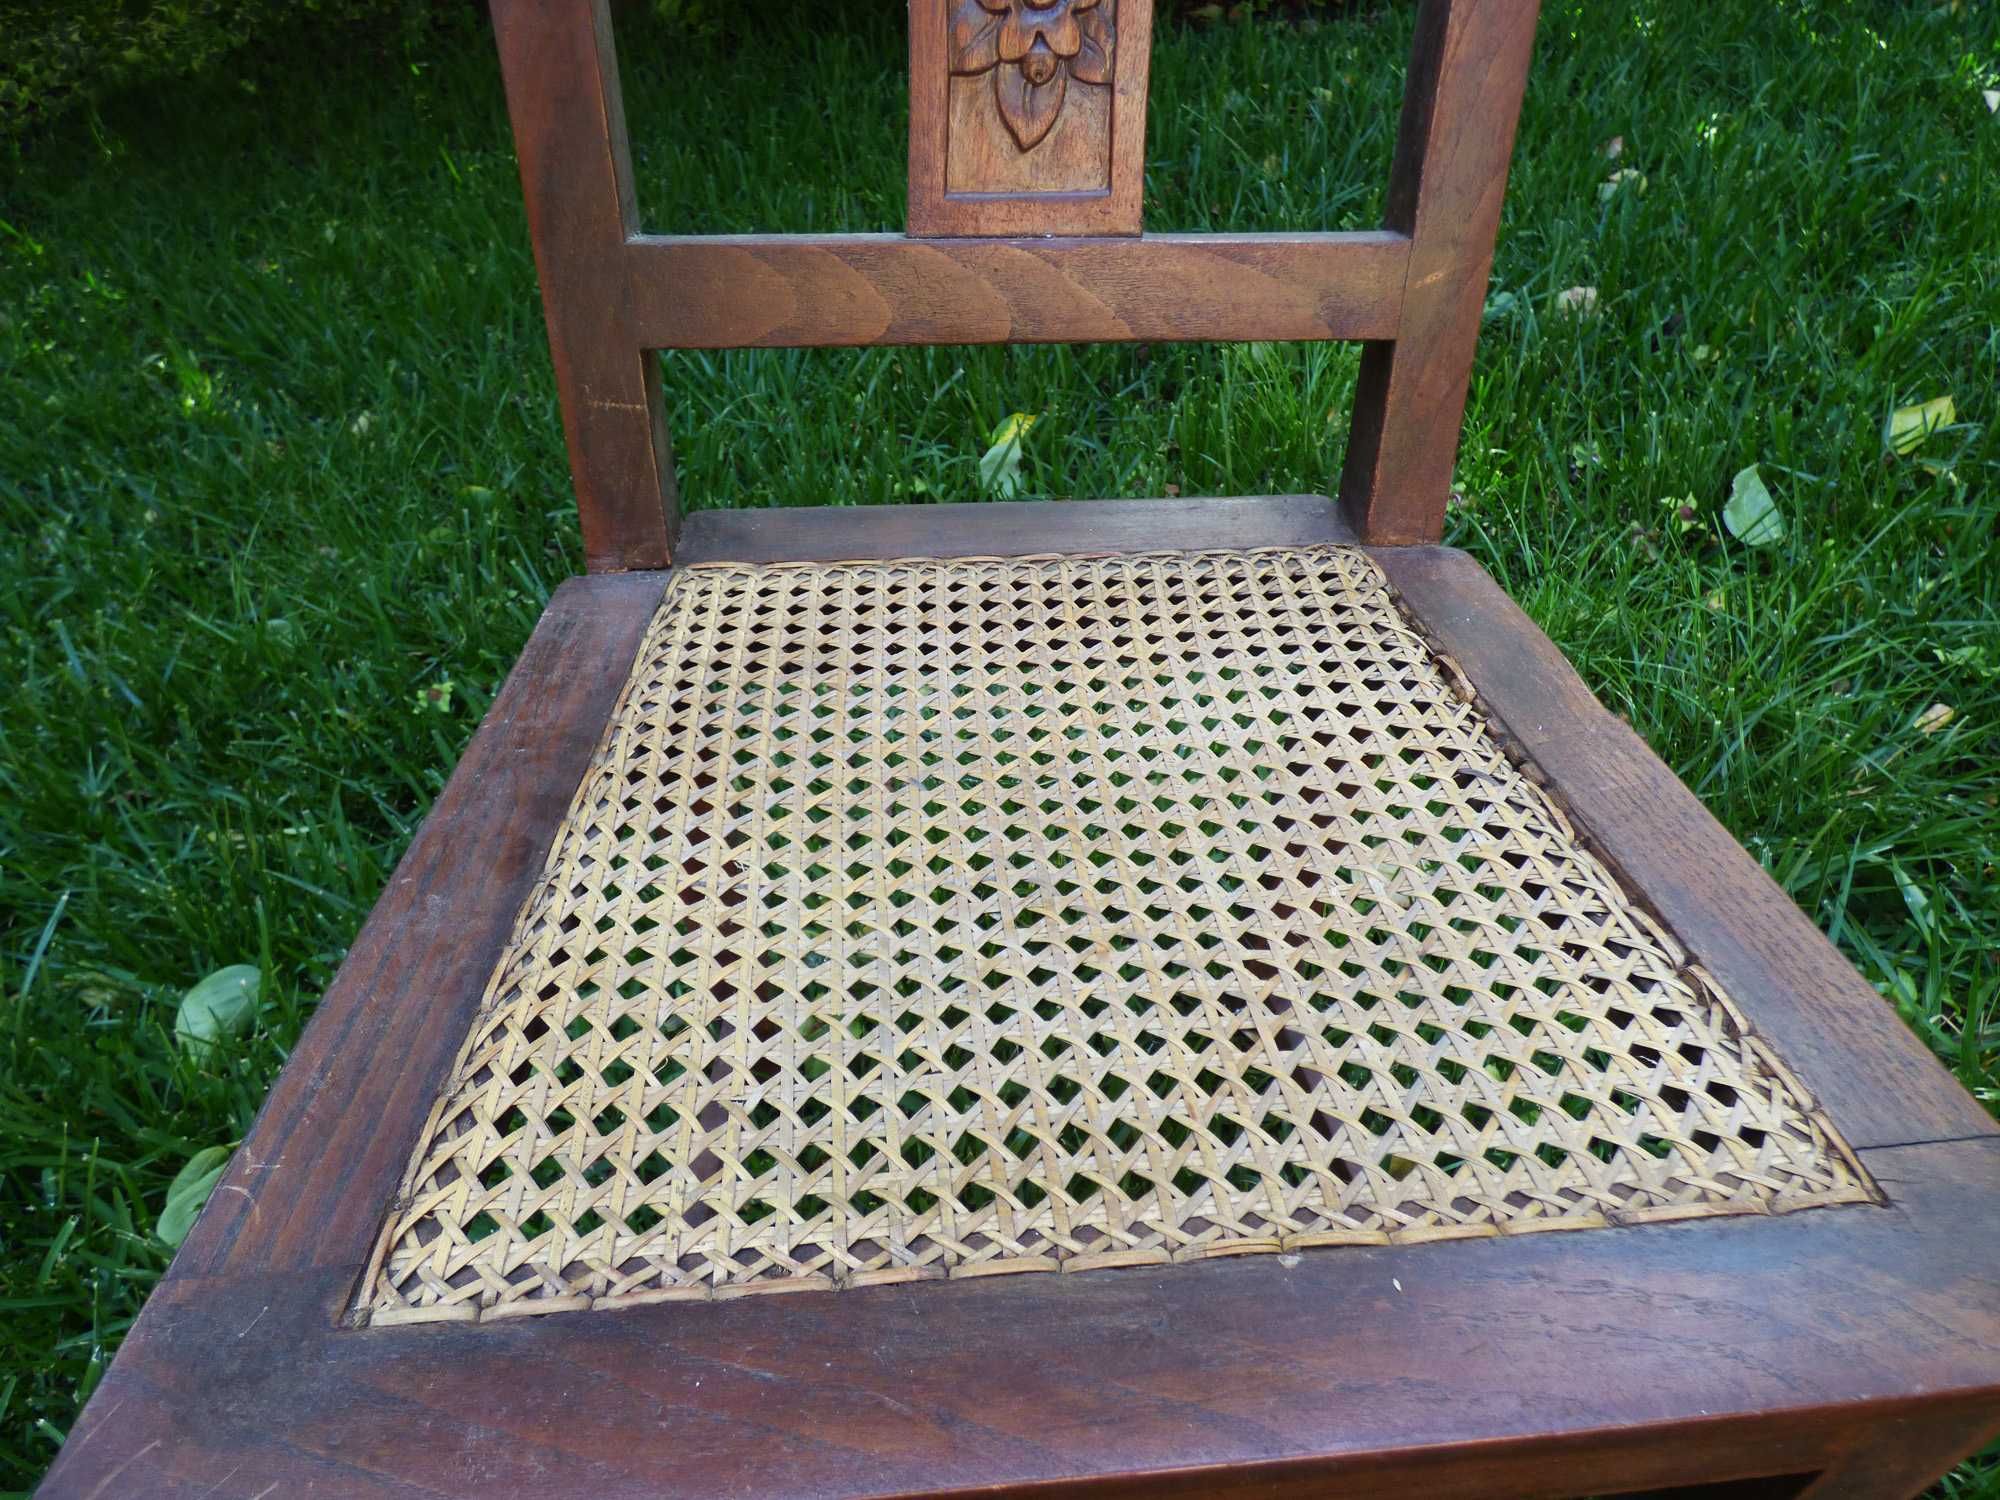 Cadeira antiga com assento rattan (palha)